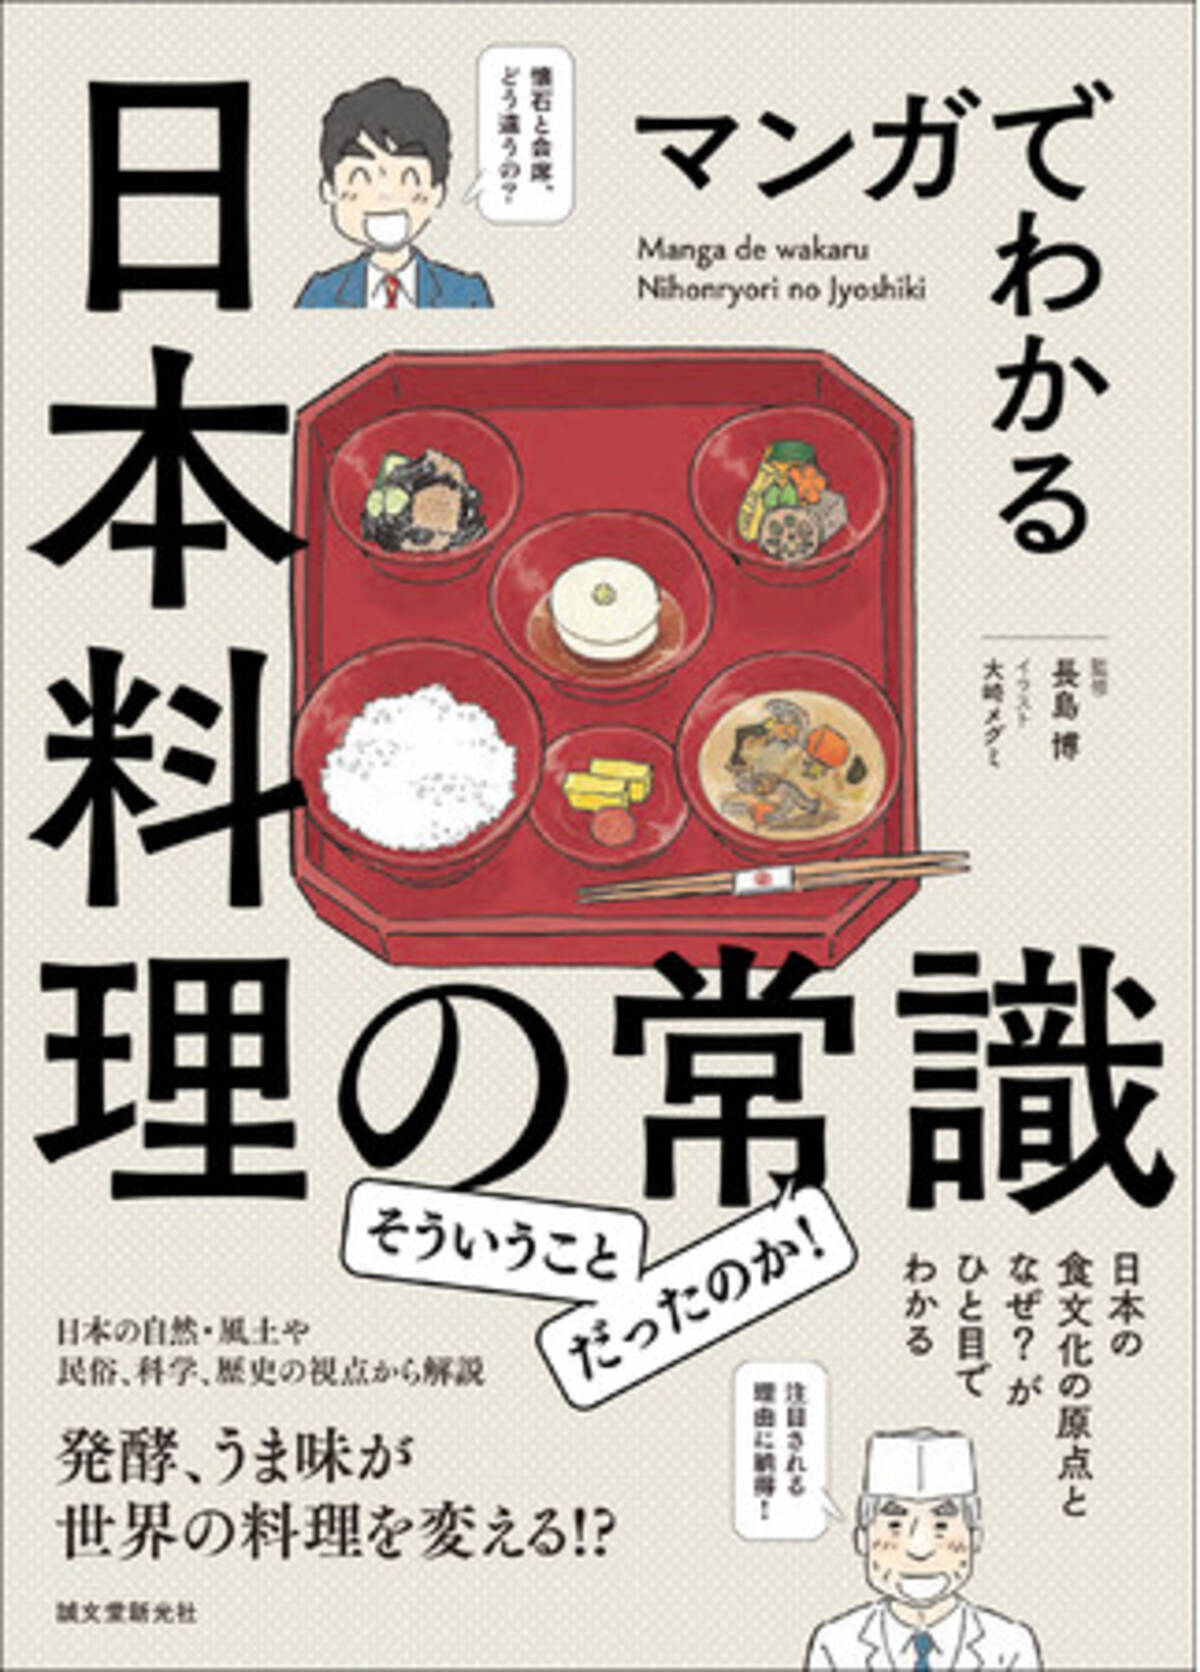 日本人も意外と知らない 日本食の常識をイラストと漫画で楽しく解説 日本食文化を決定づけた風土や歴史を学べる一冊 21年3月29日 エキサイトニュース 4 6